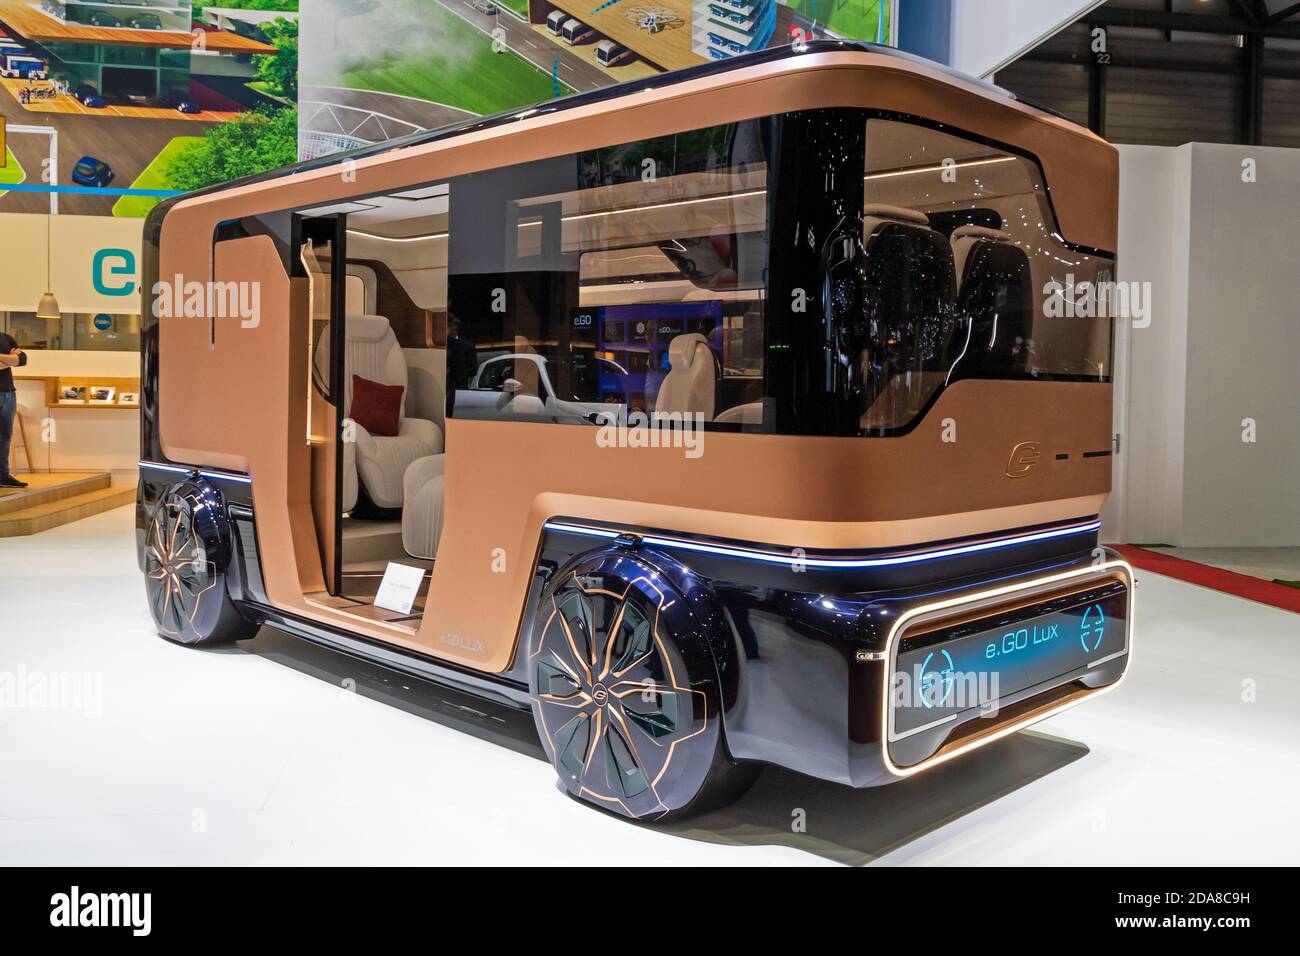 autobus elettrico e.GO Lux presentato all'89° Salone Internazionale dell'Auto di Ginevra. Ginevra, Svizzera - 6 marzo 2019. Foto Stock